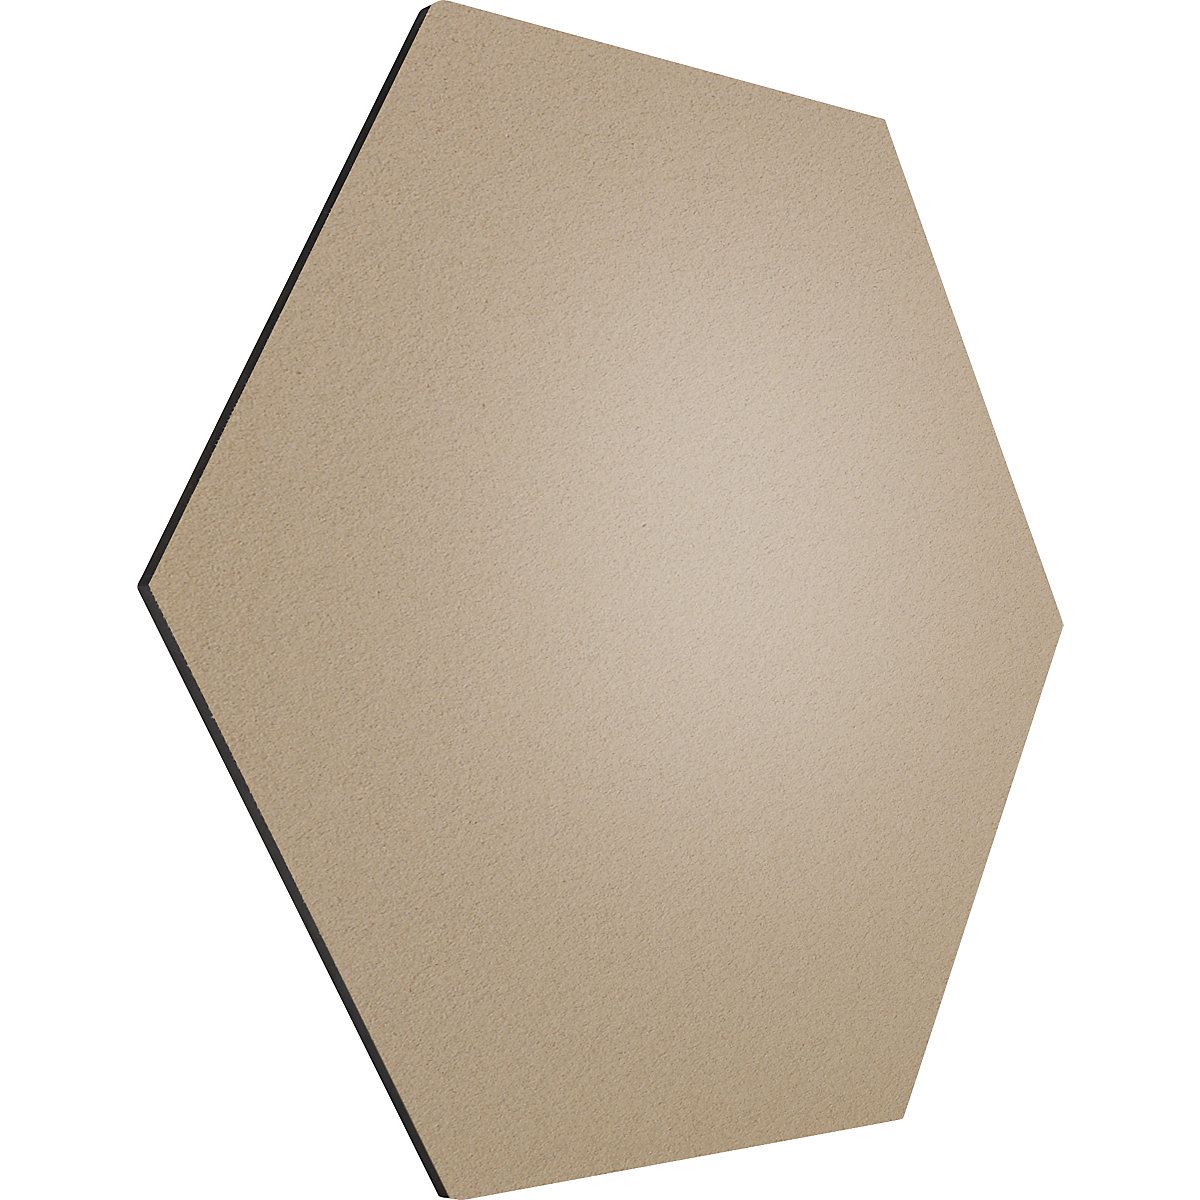 Tableau à épingles design hexagonal – Chameleon, liège, l x h 600 x 600 mm, beige-26